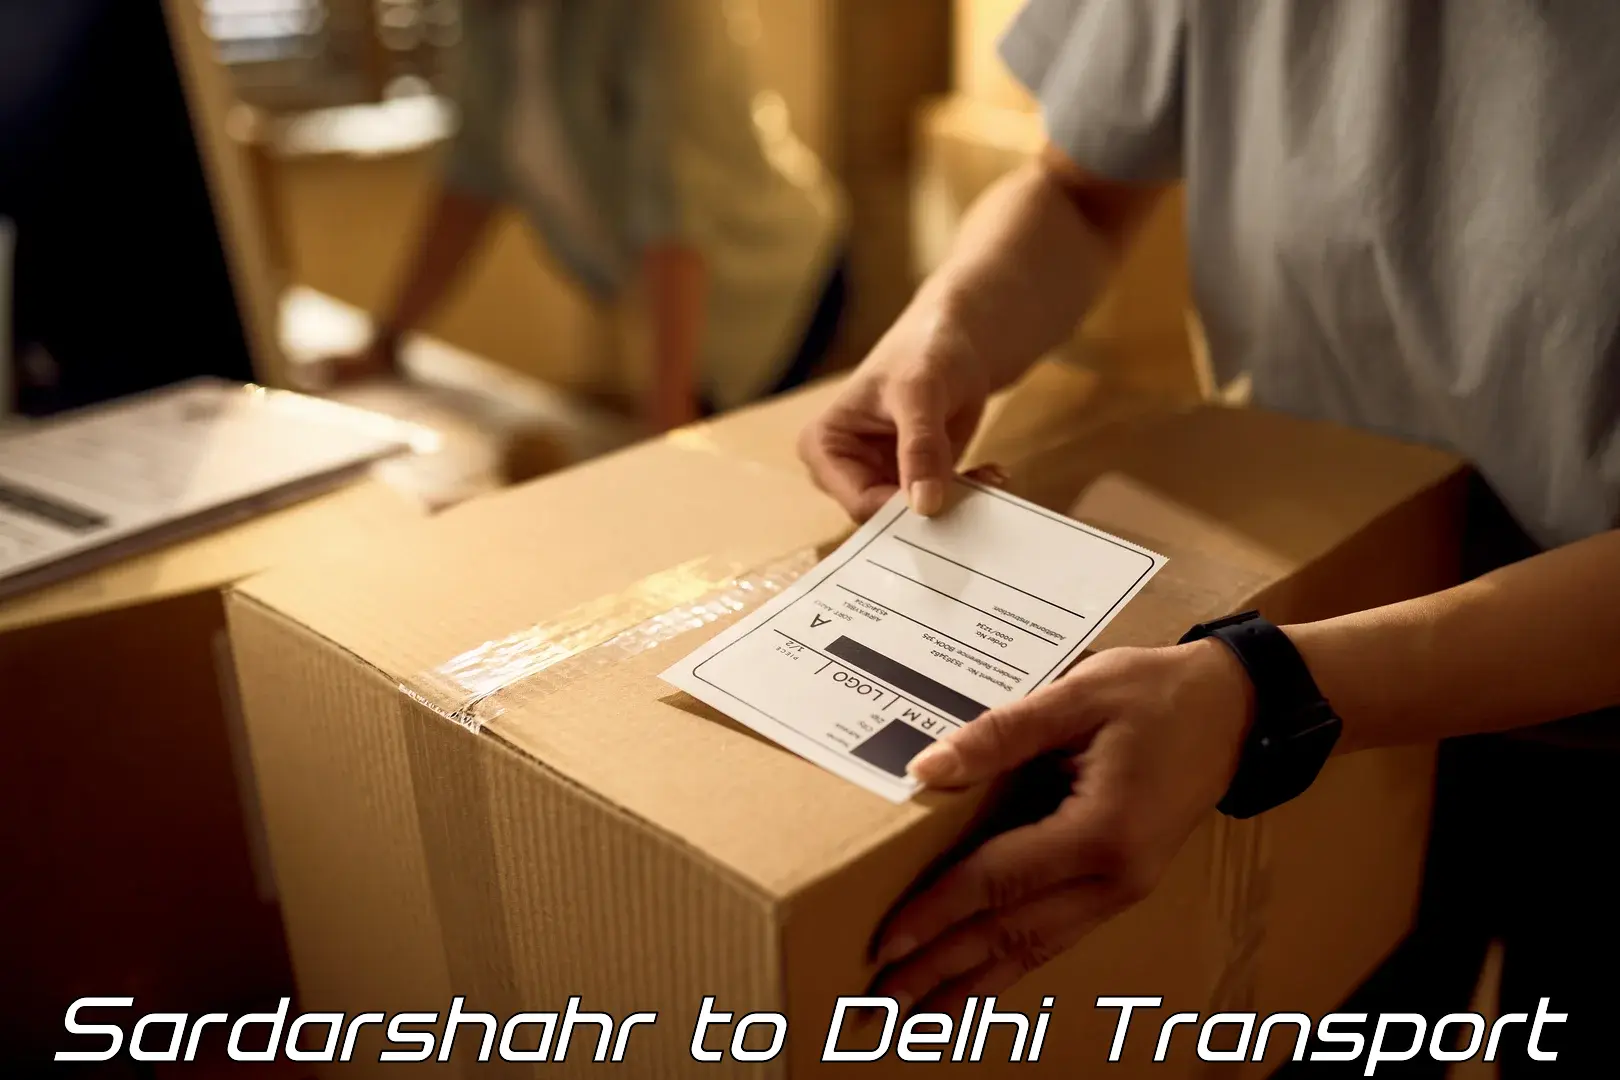 Container transport service Sardarshahr to Delhi